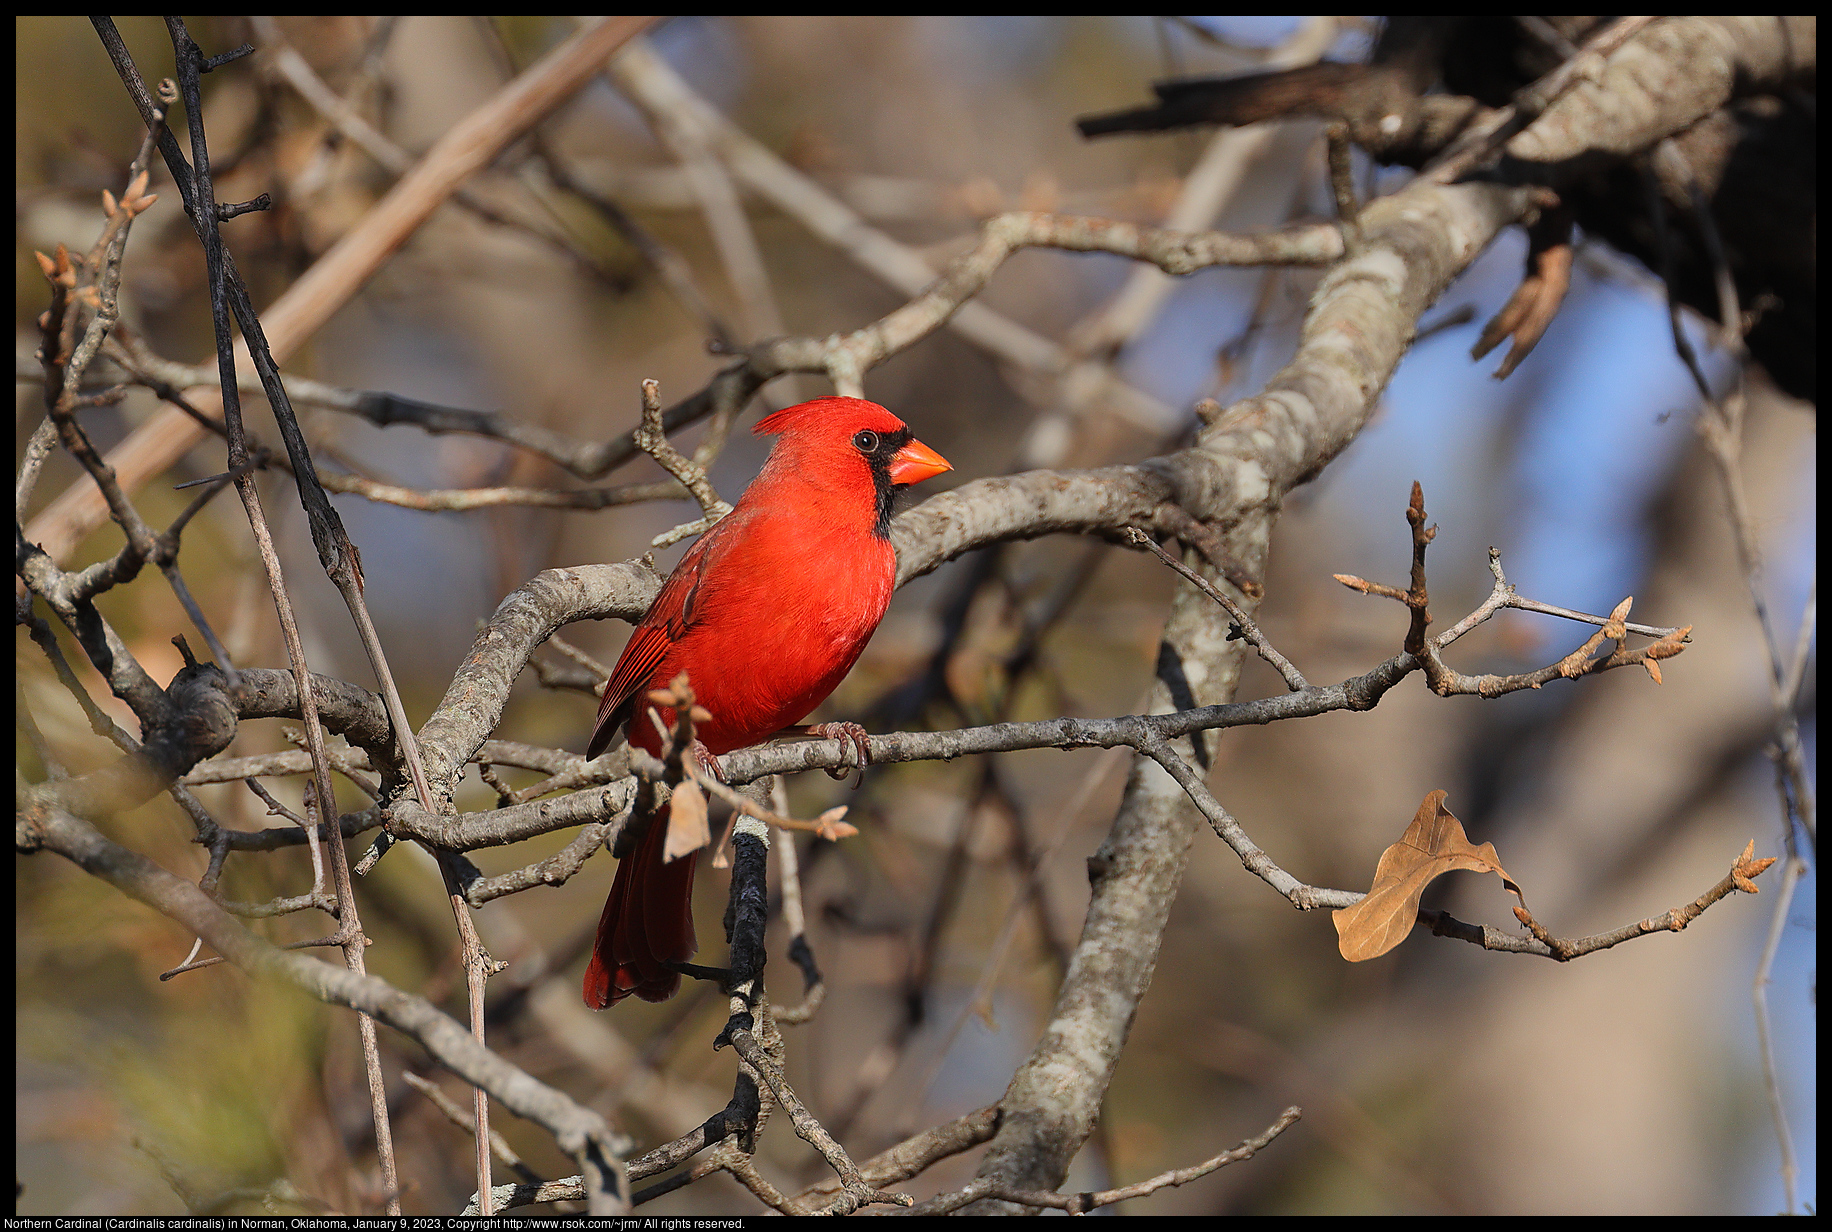 Northern Cardinal (Cardinalis cardinalis) in Norman, Oklahoma, January 9, 2023